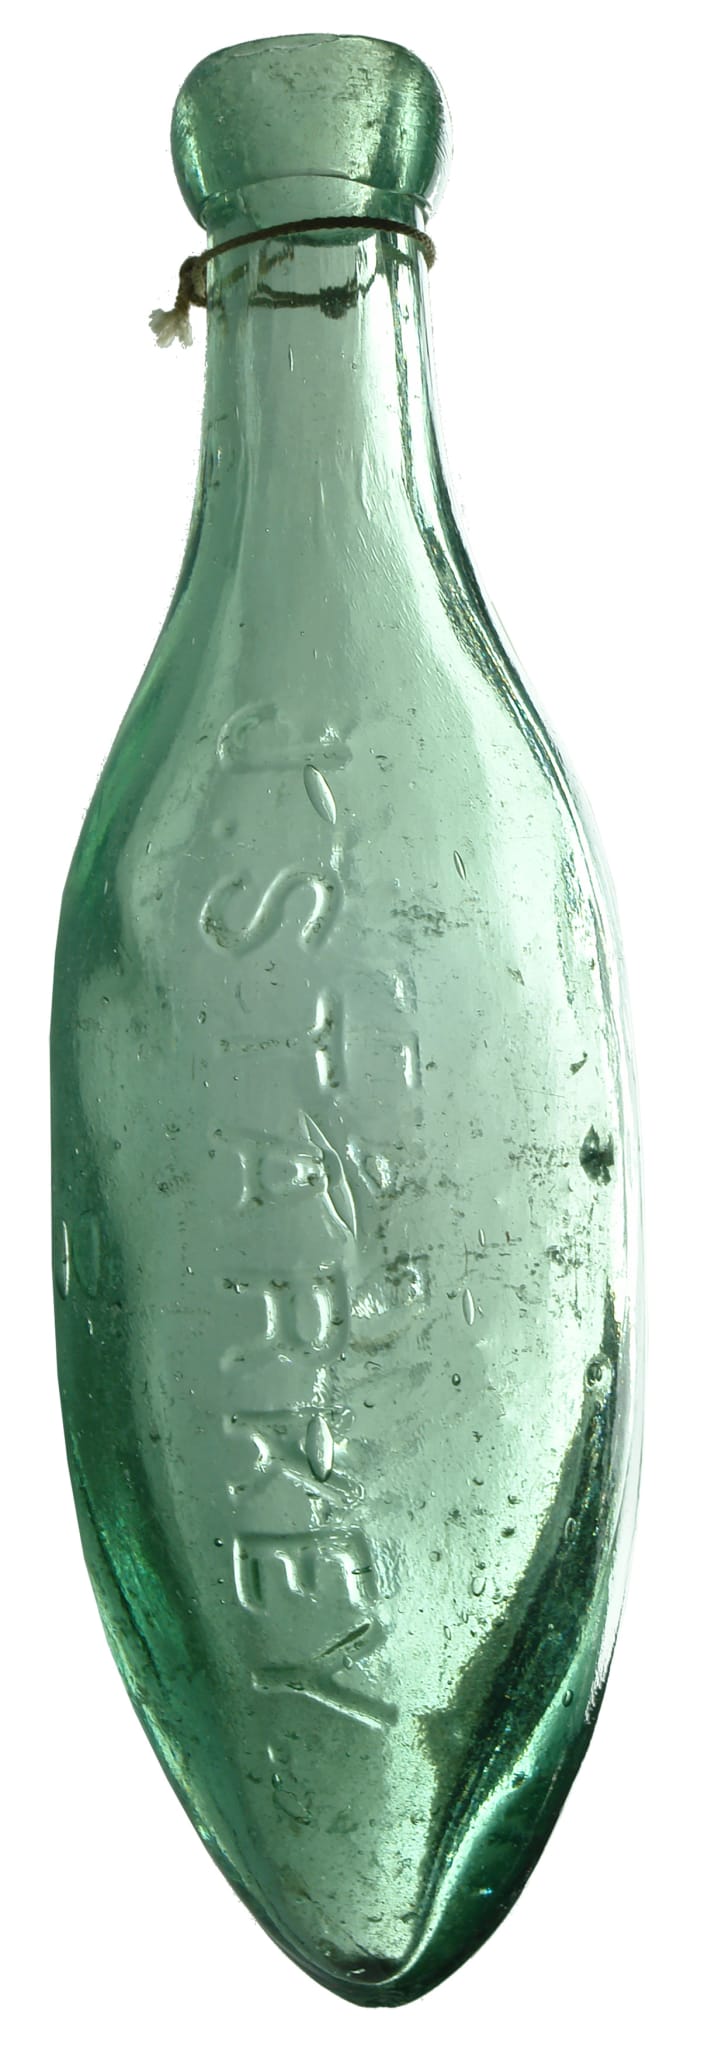 Starkey Phillip Street Antique Torpedo Bottle